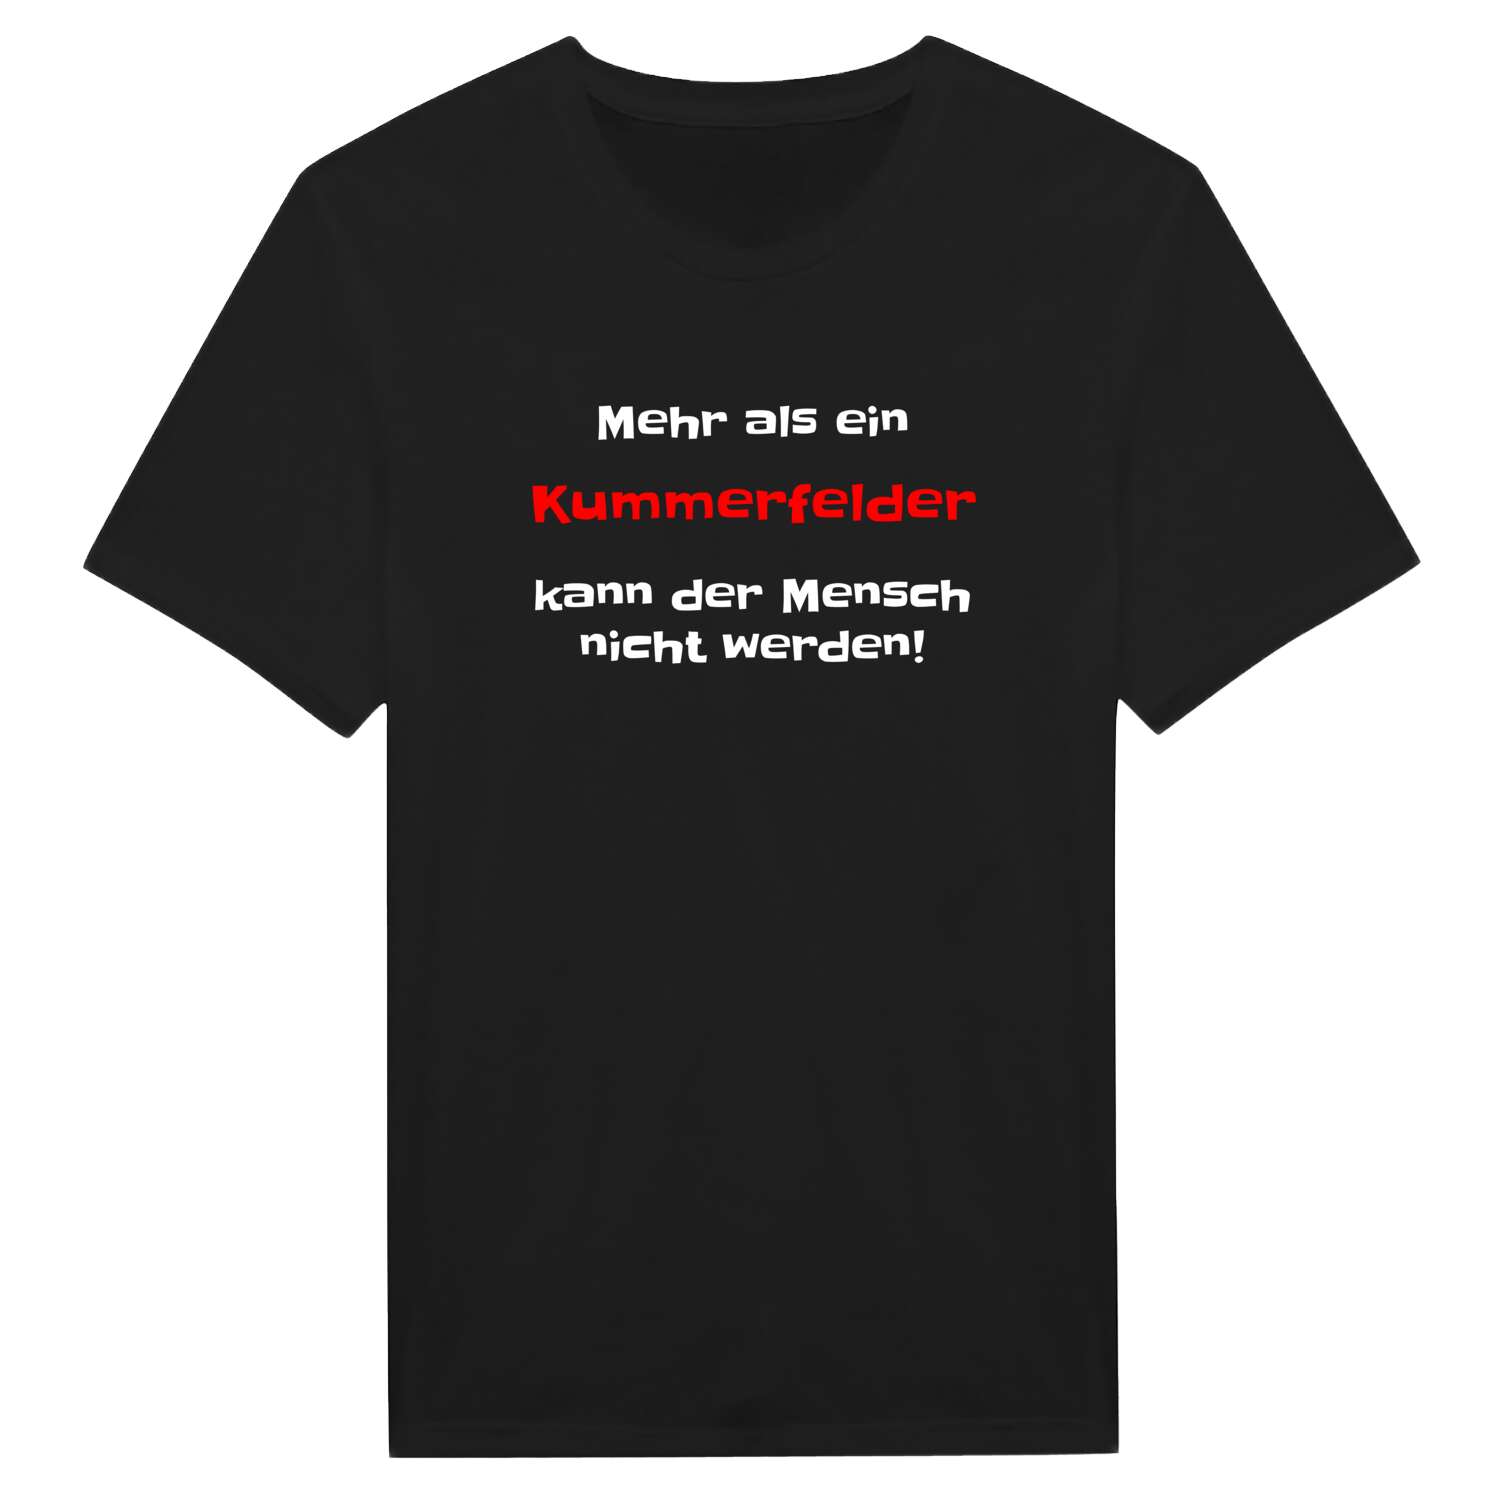 Kummerfeld T-Shirt »Mehr als ein«